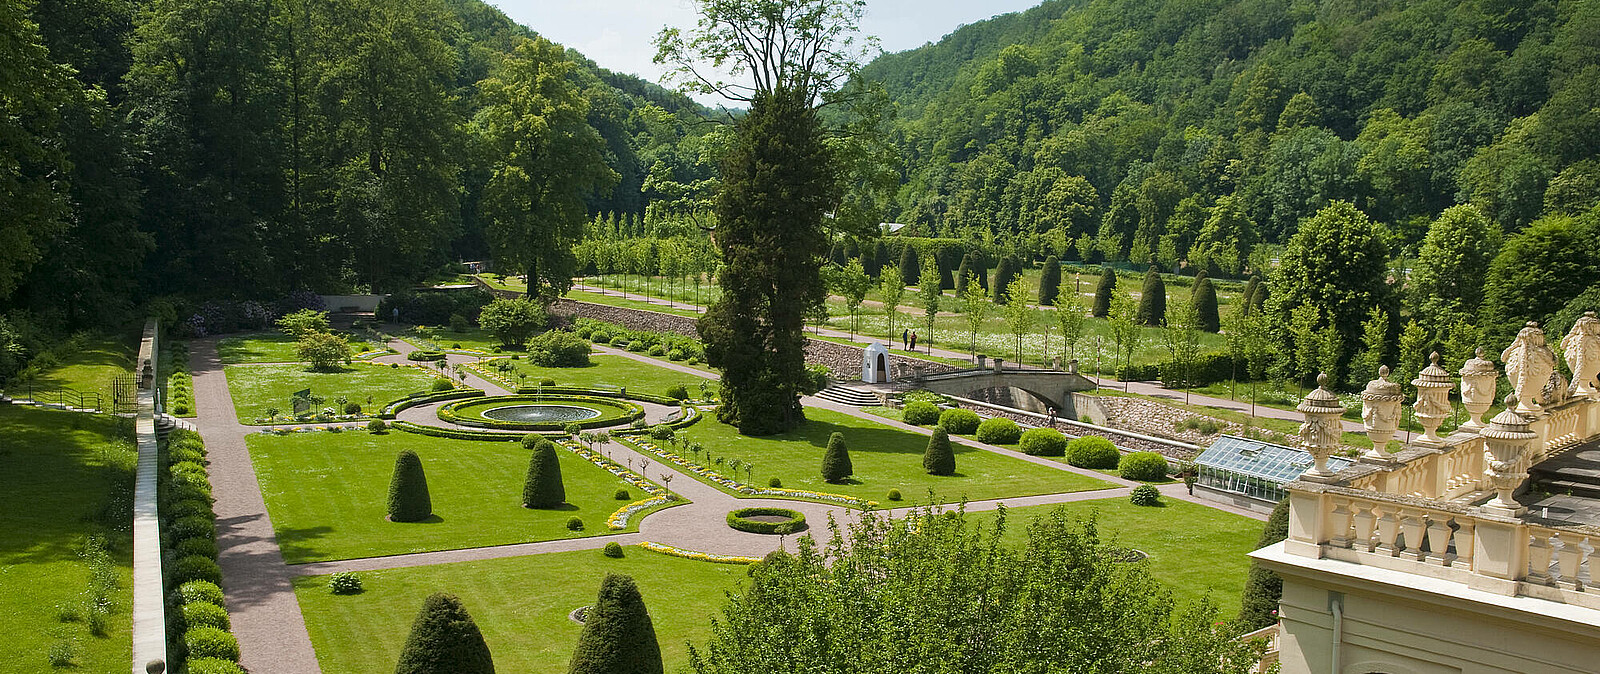 Auch der Schlosspark Weesenstein mit seiner beeindruckenden Anlage ist immer einen Ausflug wert. Passionierte Gärtner beantworten Ihnen hier jede Frage.